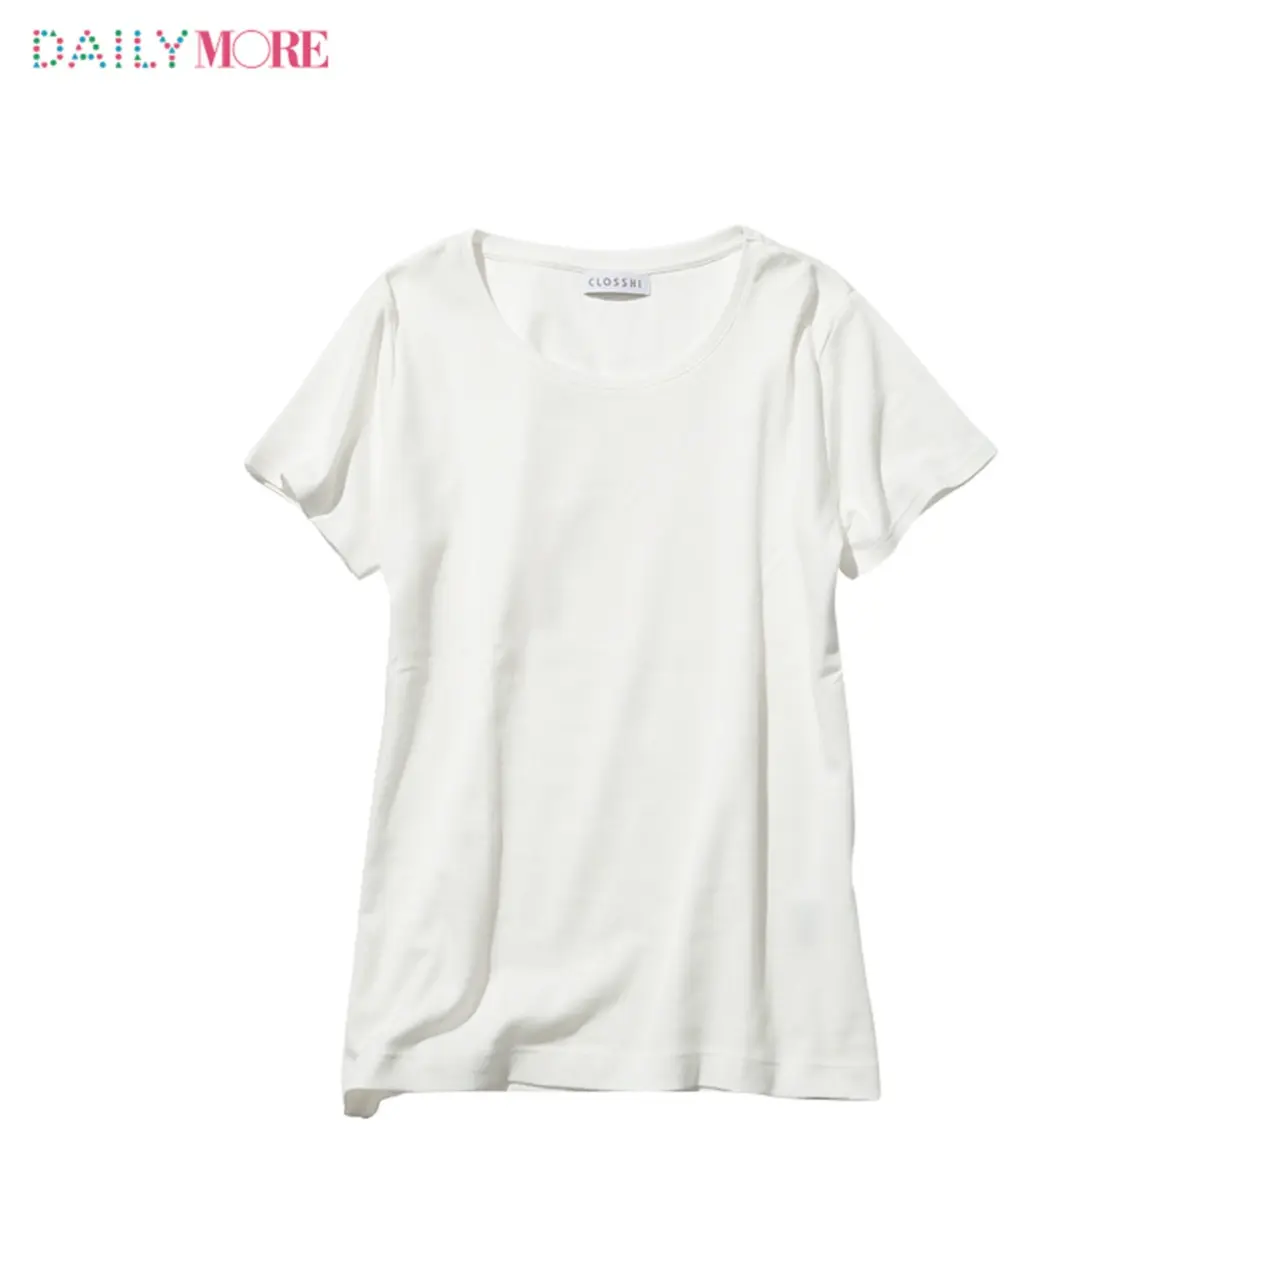 ユニクロ Gu しまむら ３大プチプラブランドの 白tシャツ Moreがくらべてみました ファッション コーディネート 代 Daily More